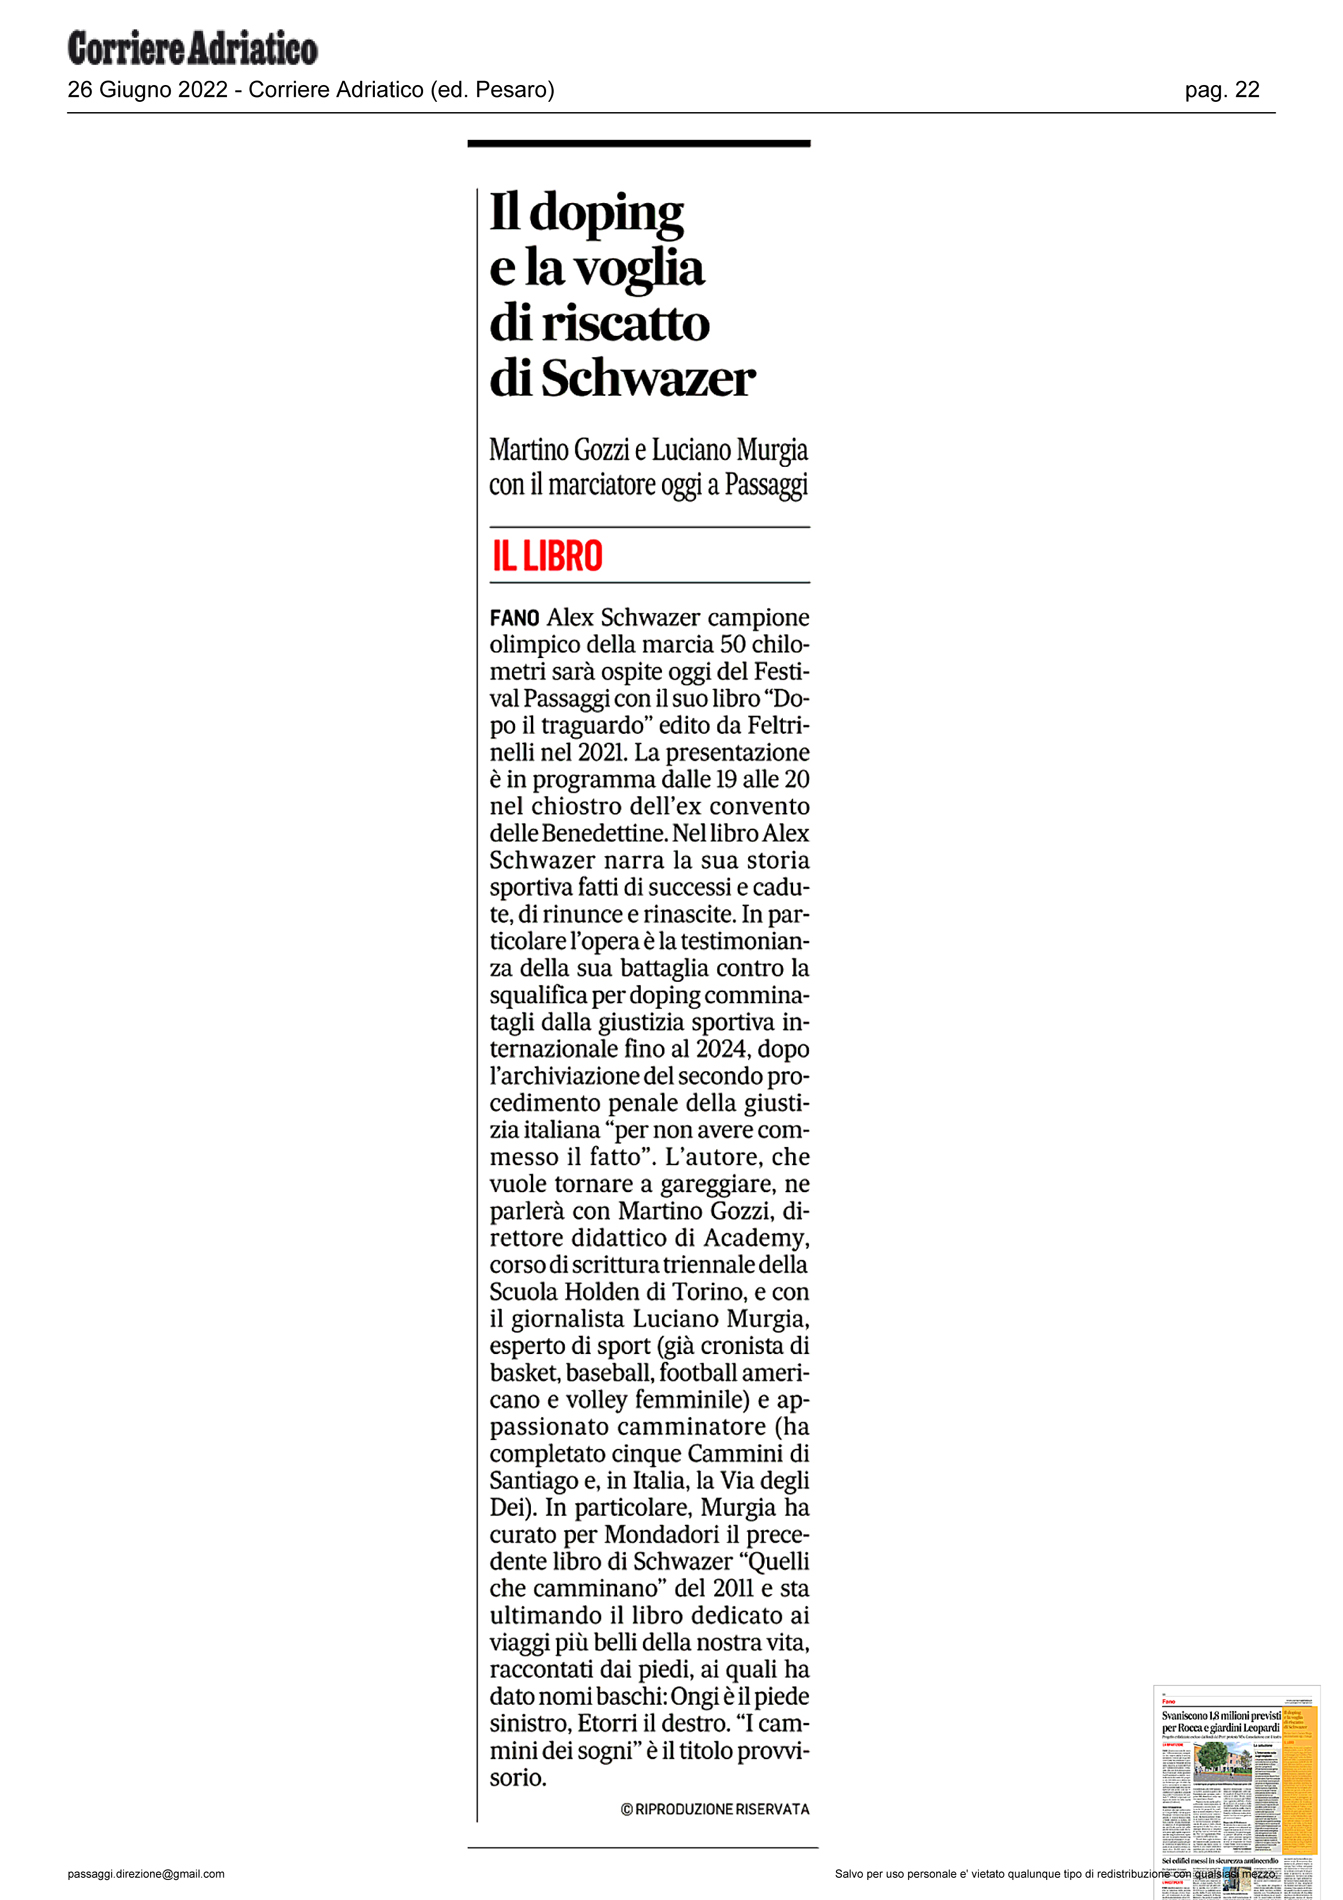 Corriere Adriatico – Il doping e la voglia di riscatto di Schwazer